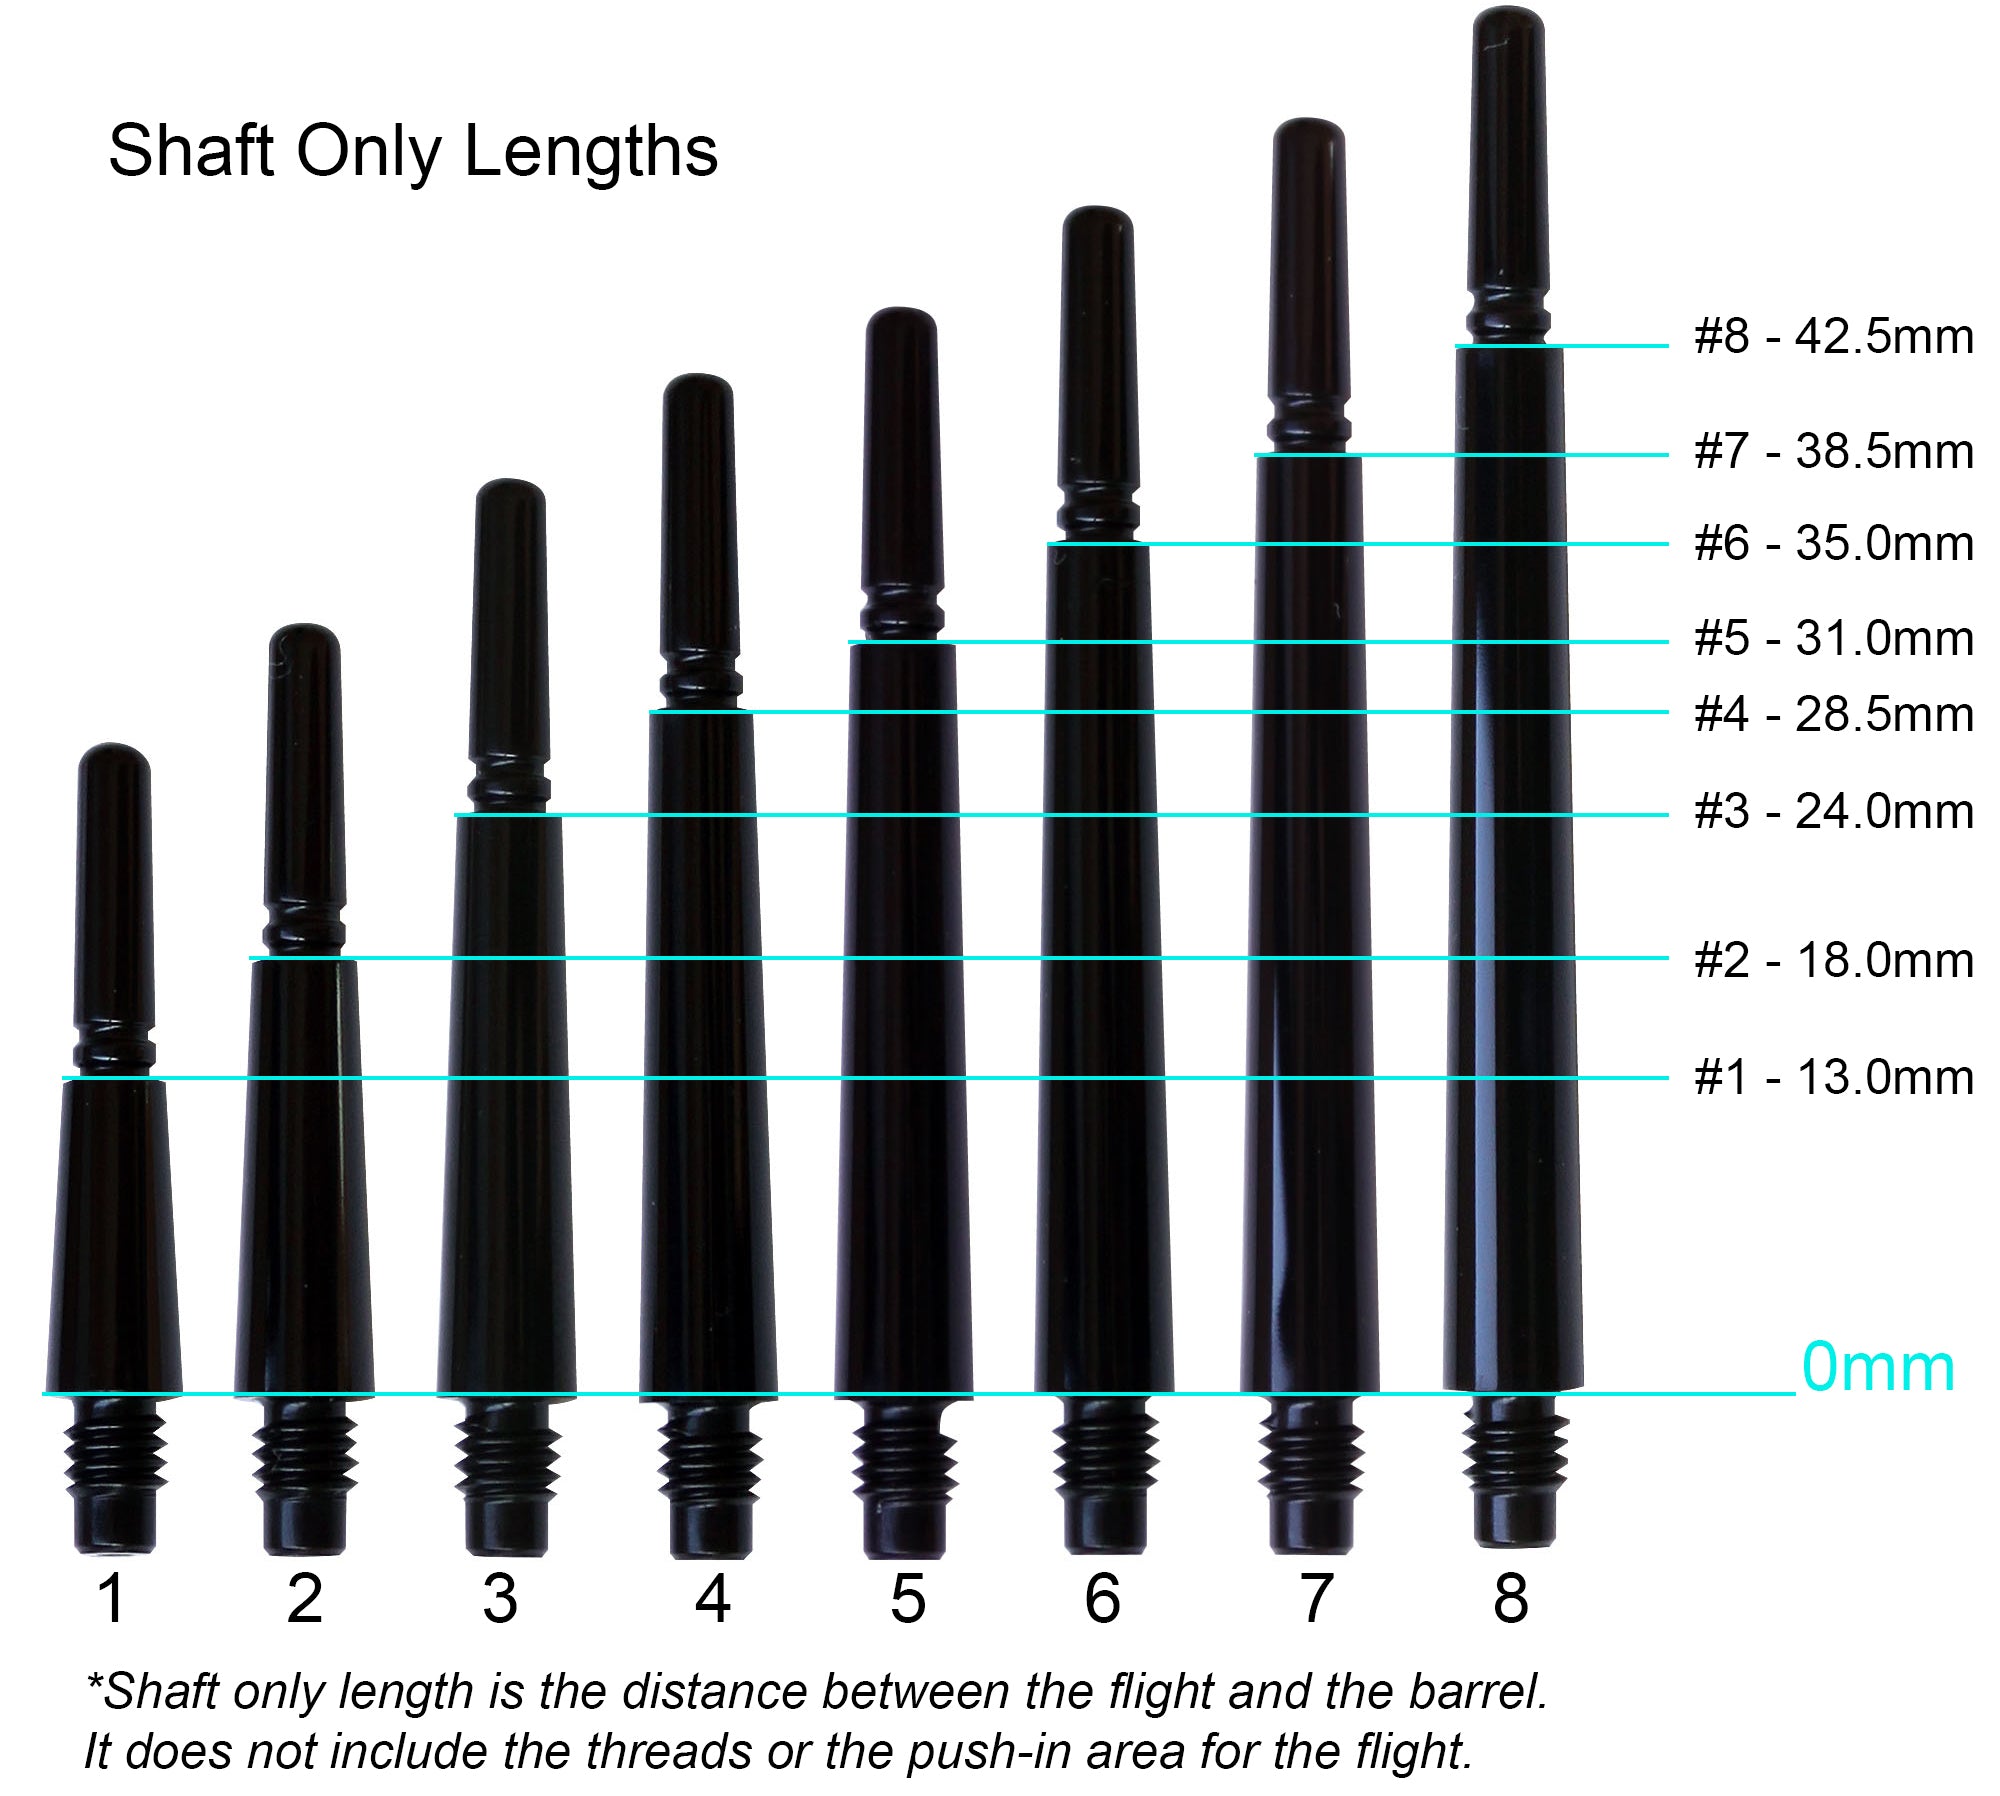 Fit Flight Gear Slim Spinning Dart Shafts - Short #3 (24.0mm) Black